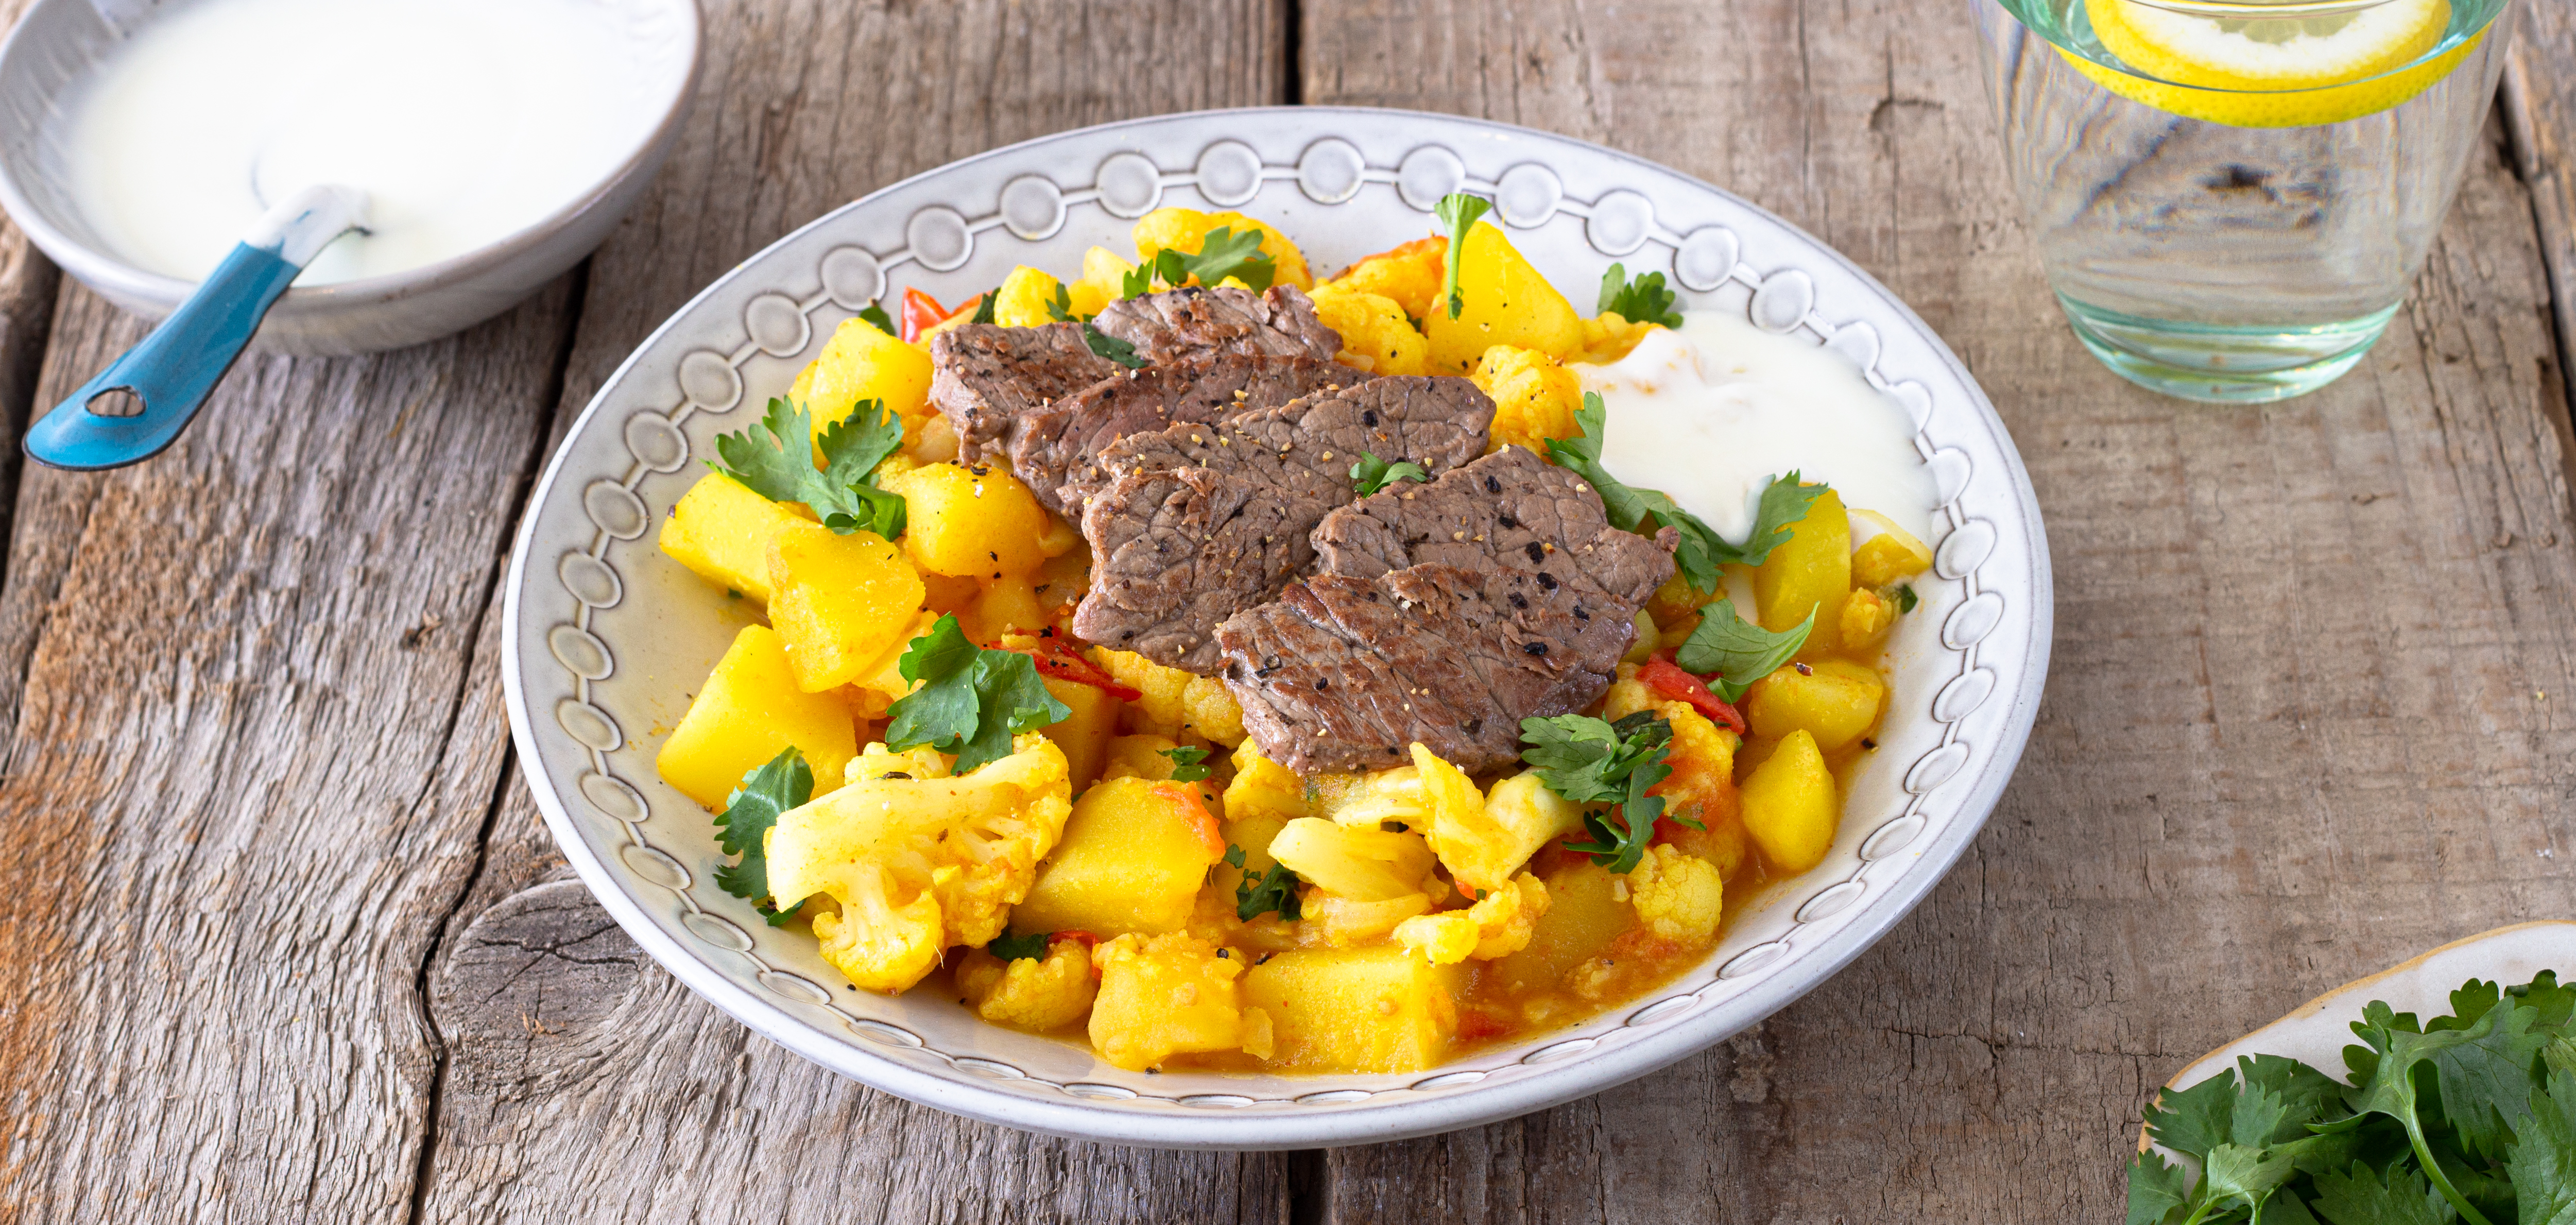 Recept van het Voedingscentrum: Aardappel-bloemkoolcurry met bief